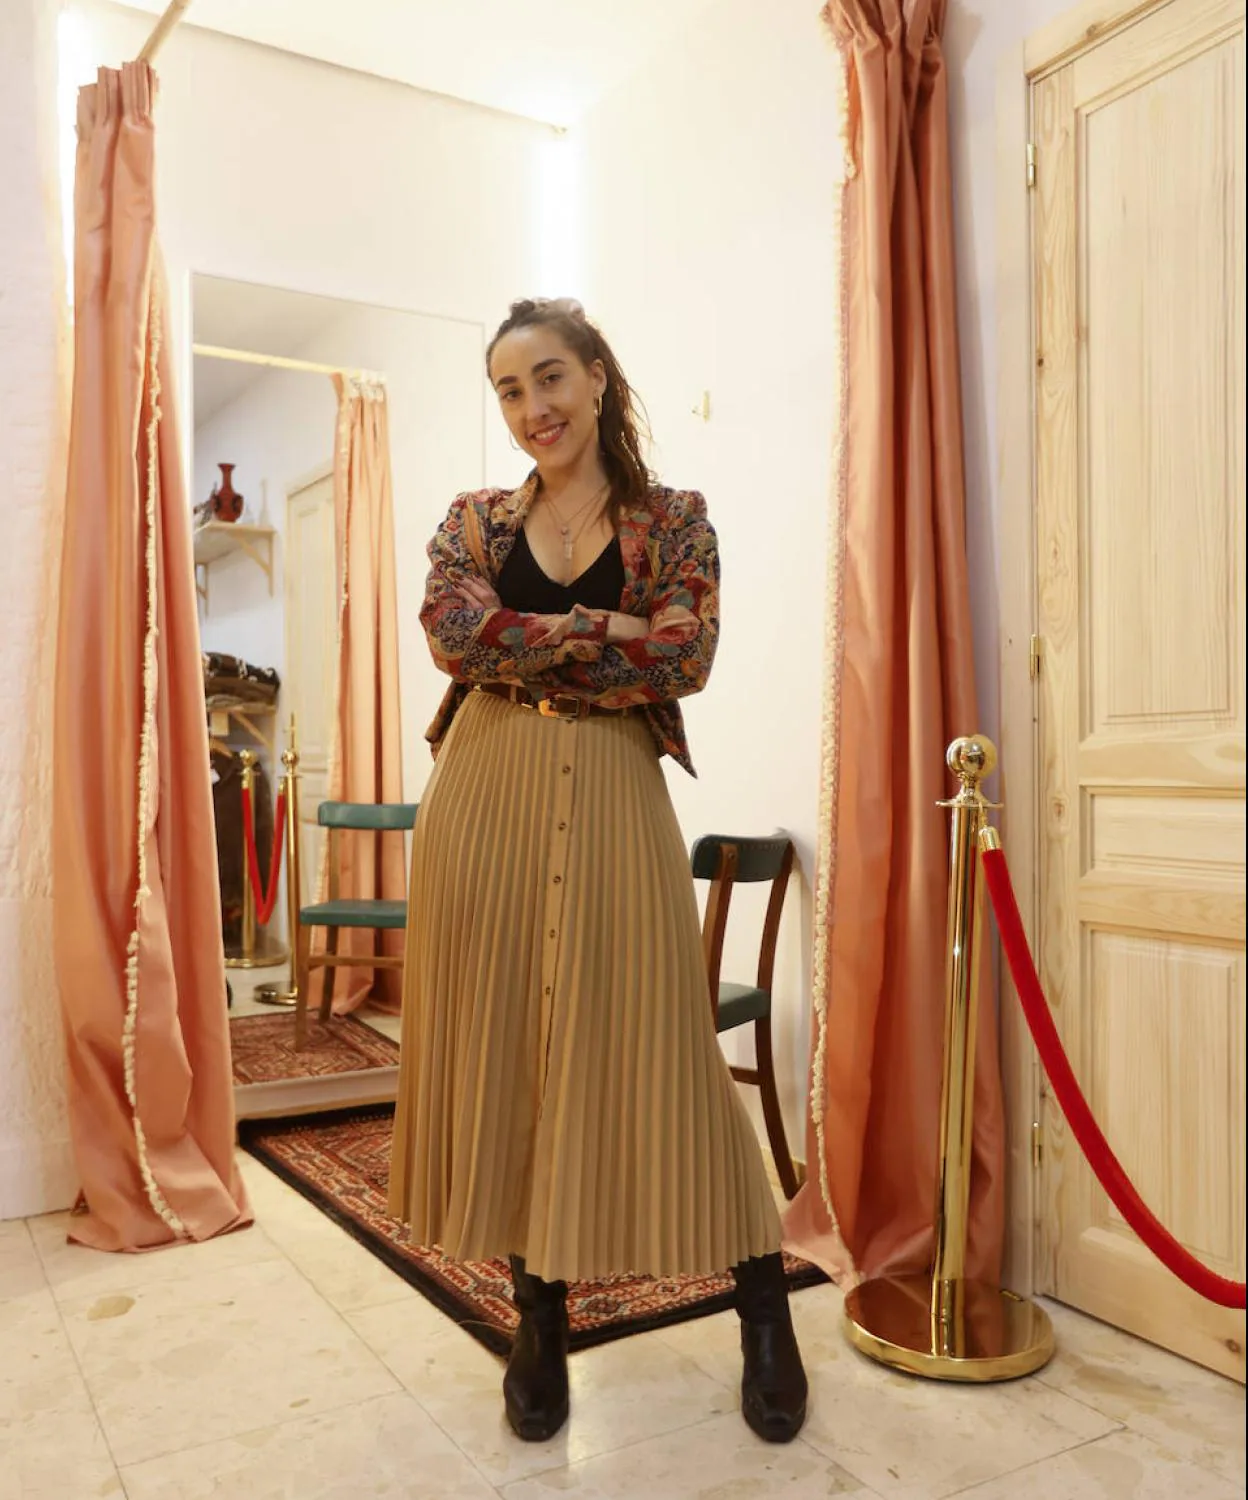 Tiendas en Bilbao 'vintage'): Mara, la joven creadora que abre su segunda de ropa 'vintage' en Bilbao | El Correo